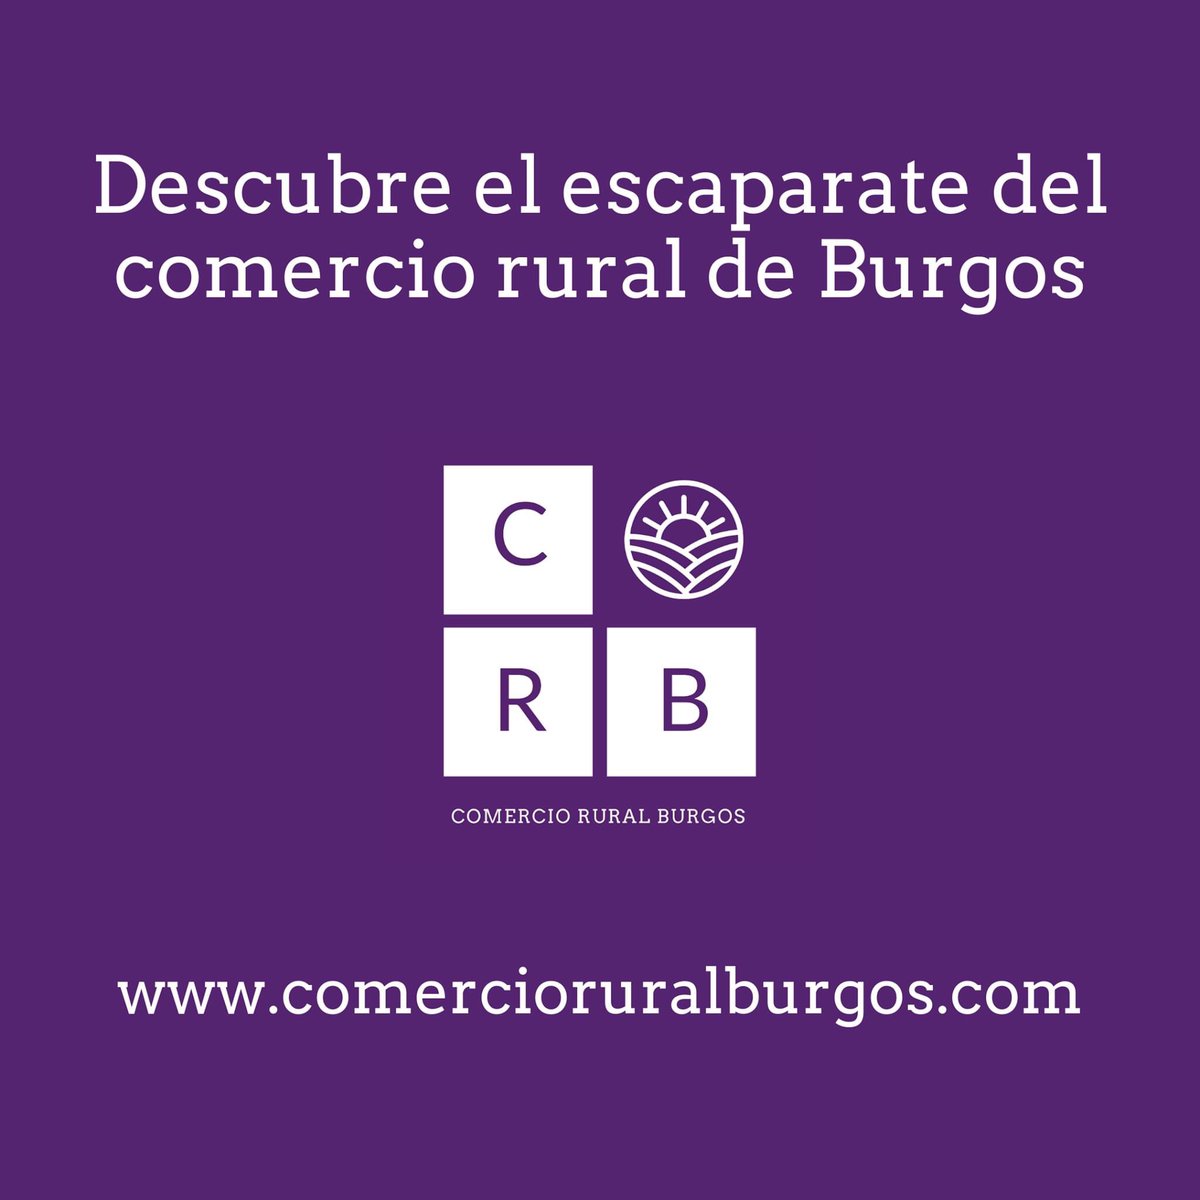 💜El comercio rural de Burgos estrena un nuevo escaparate💜 Encuentra fácilmente los productos y servicios que necesitas en comercioruralburgos.com

#cuantomascercamejor #comercioruralburgos #consumosostenible #productoskm0 #burgos #diputaciondeburgos